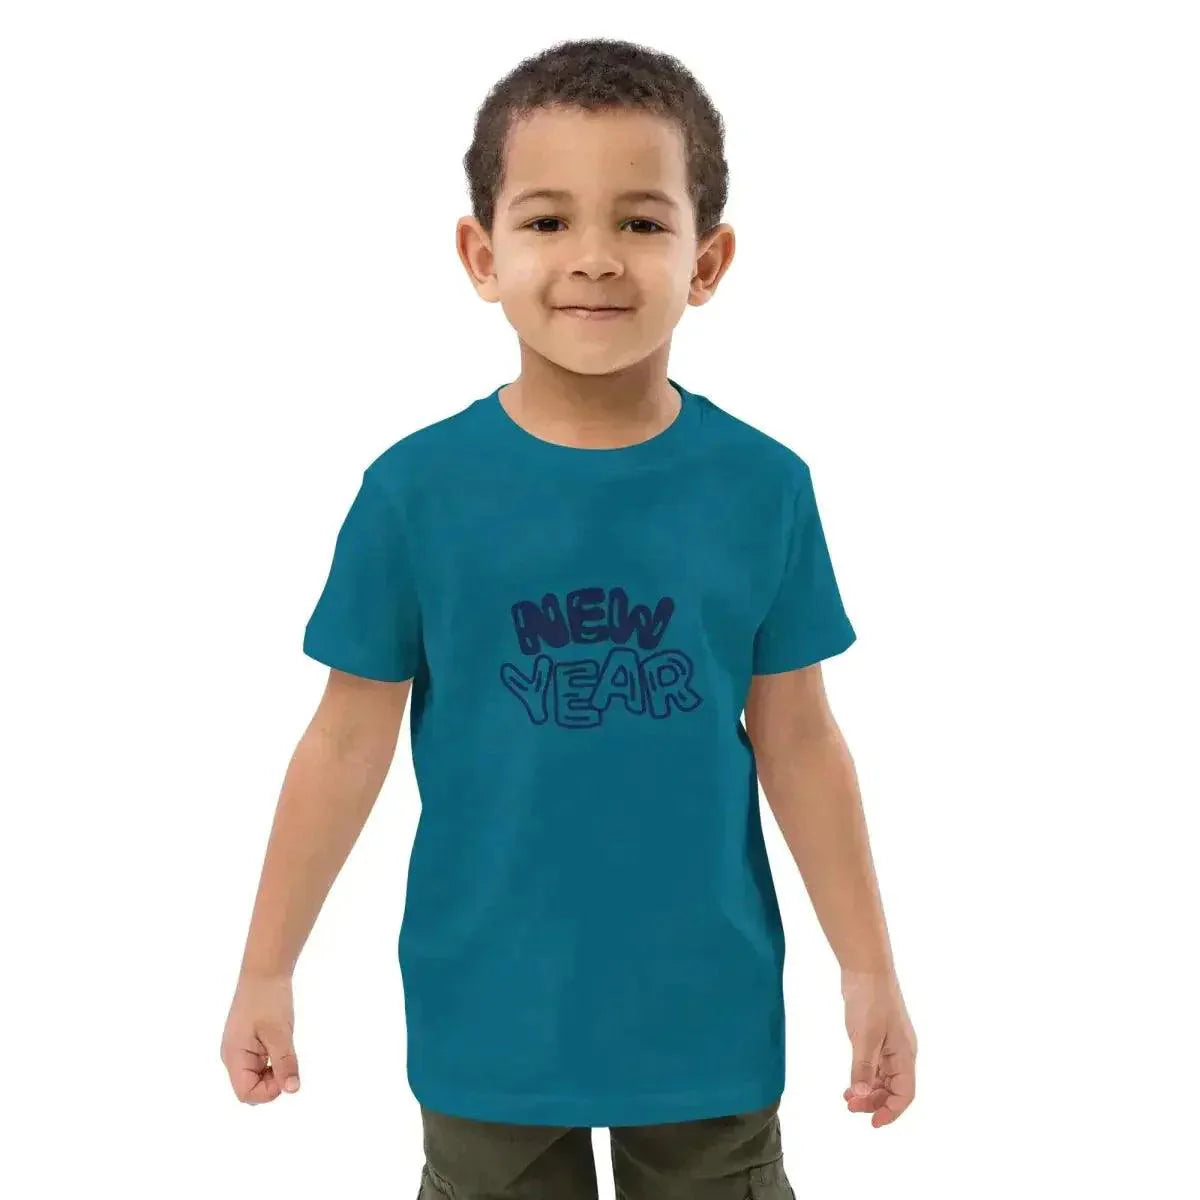 Jungen T-Shirt 3-14 Jahre - Online kaufen im Sale - Große Auswahl ➤  Günstige Preise ▻